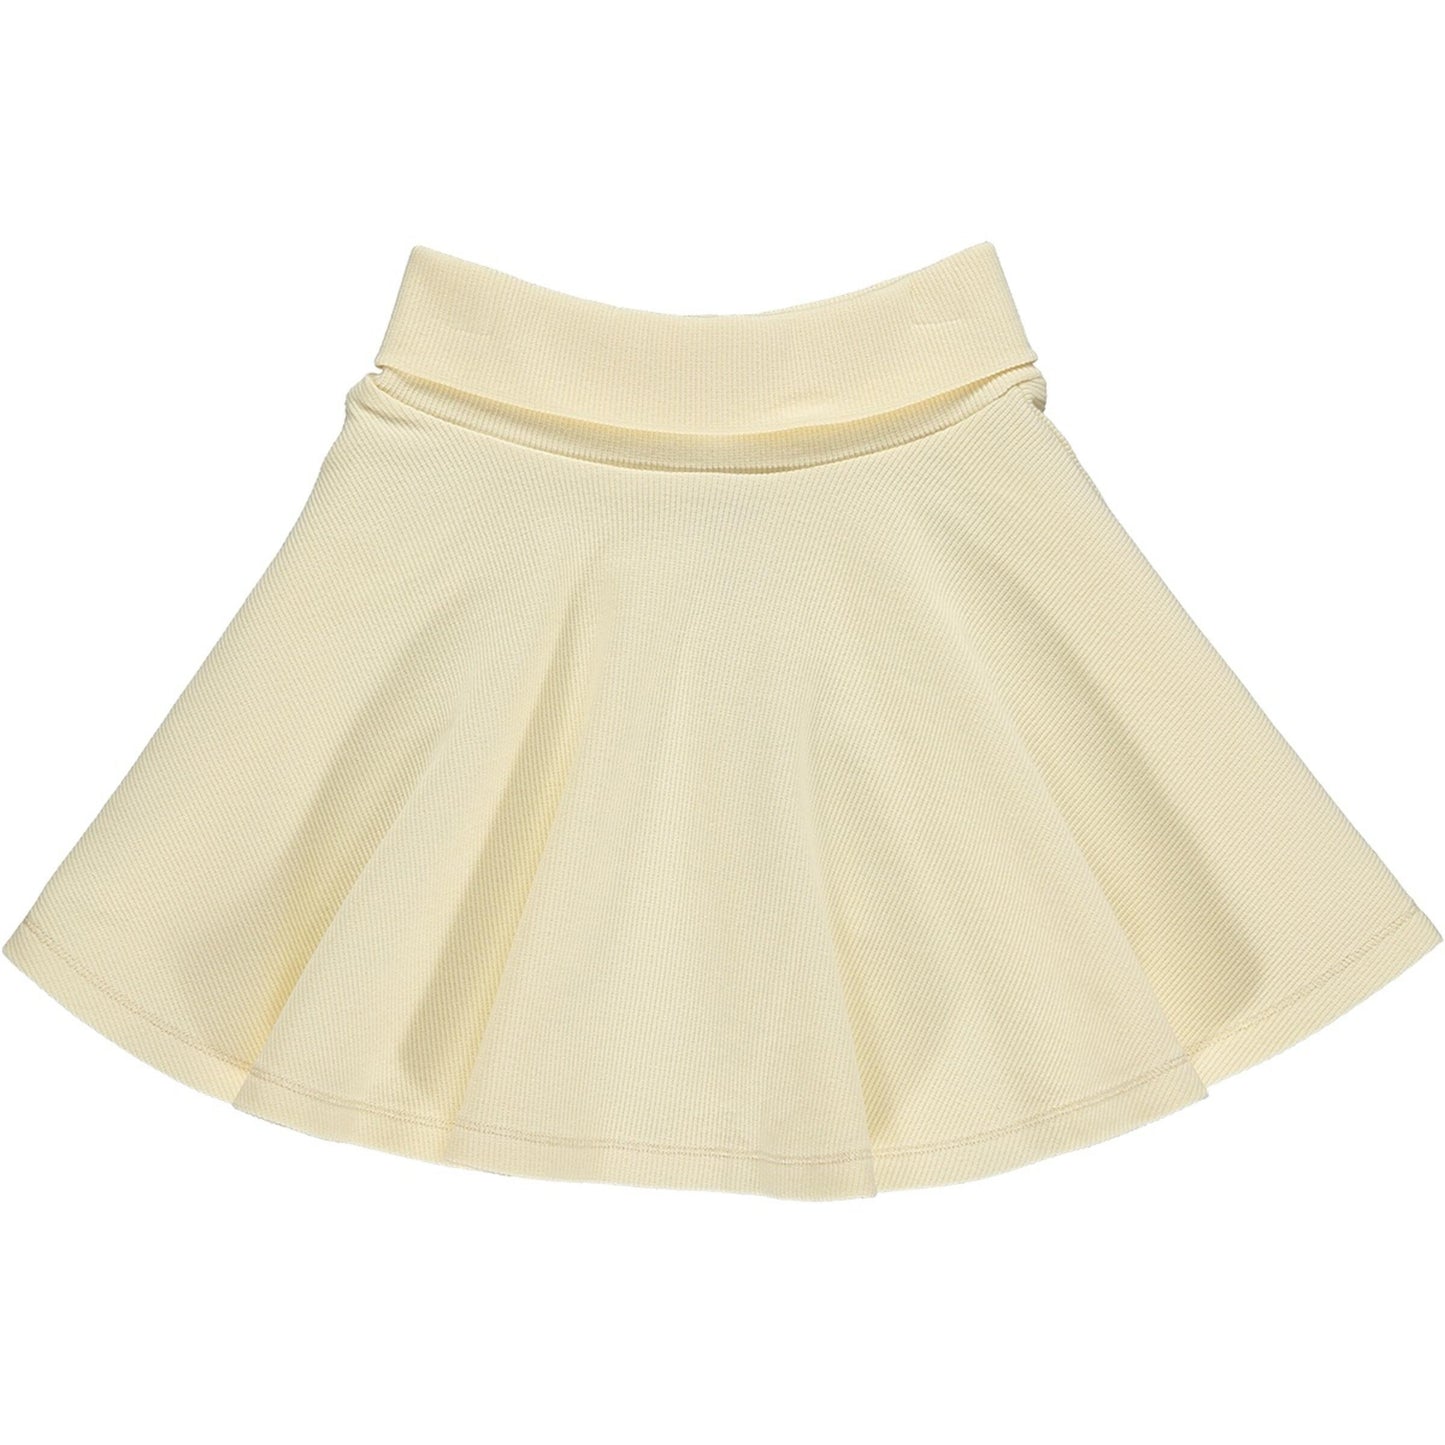 Vignette® Ivory Emory Skirt